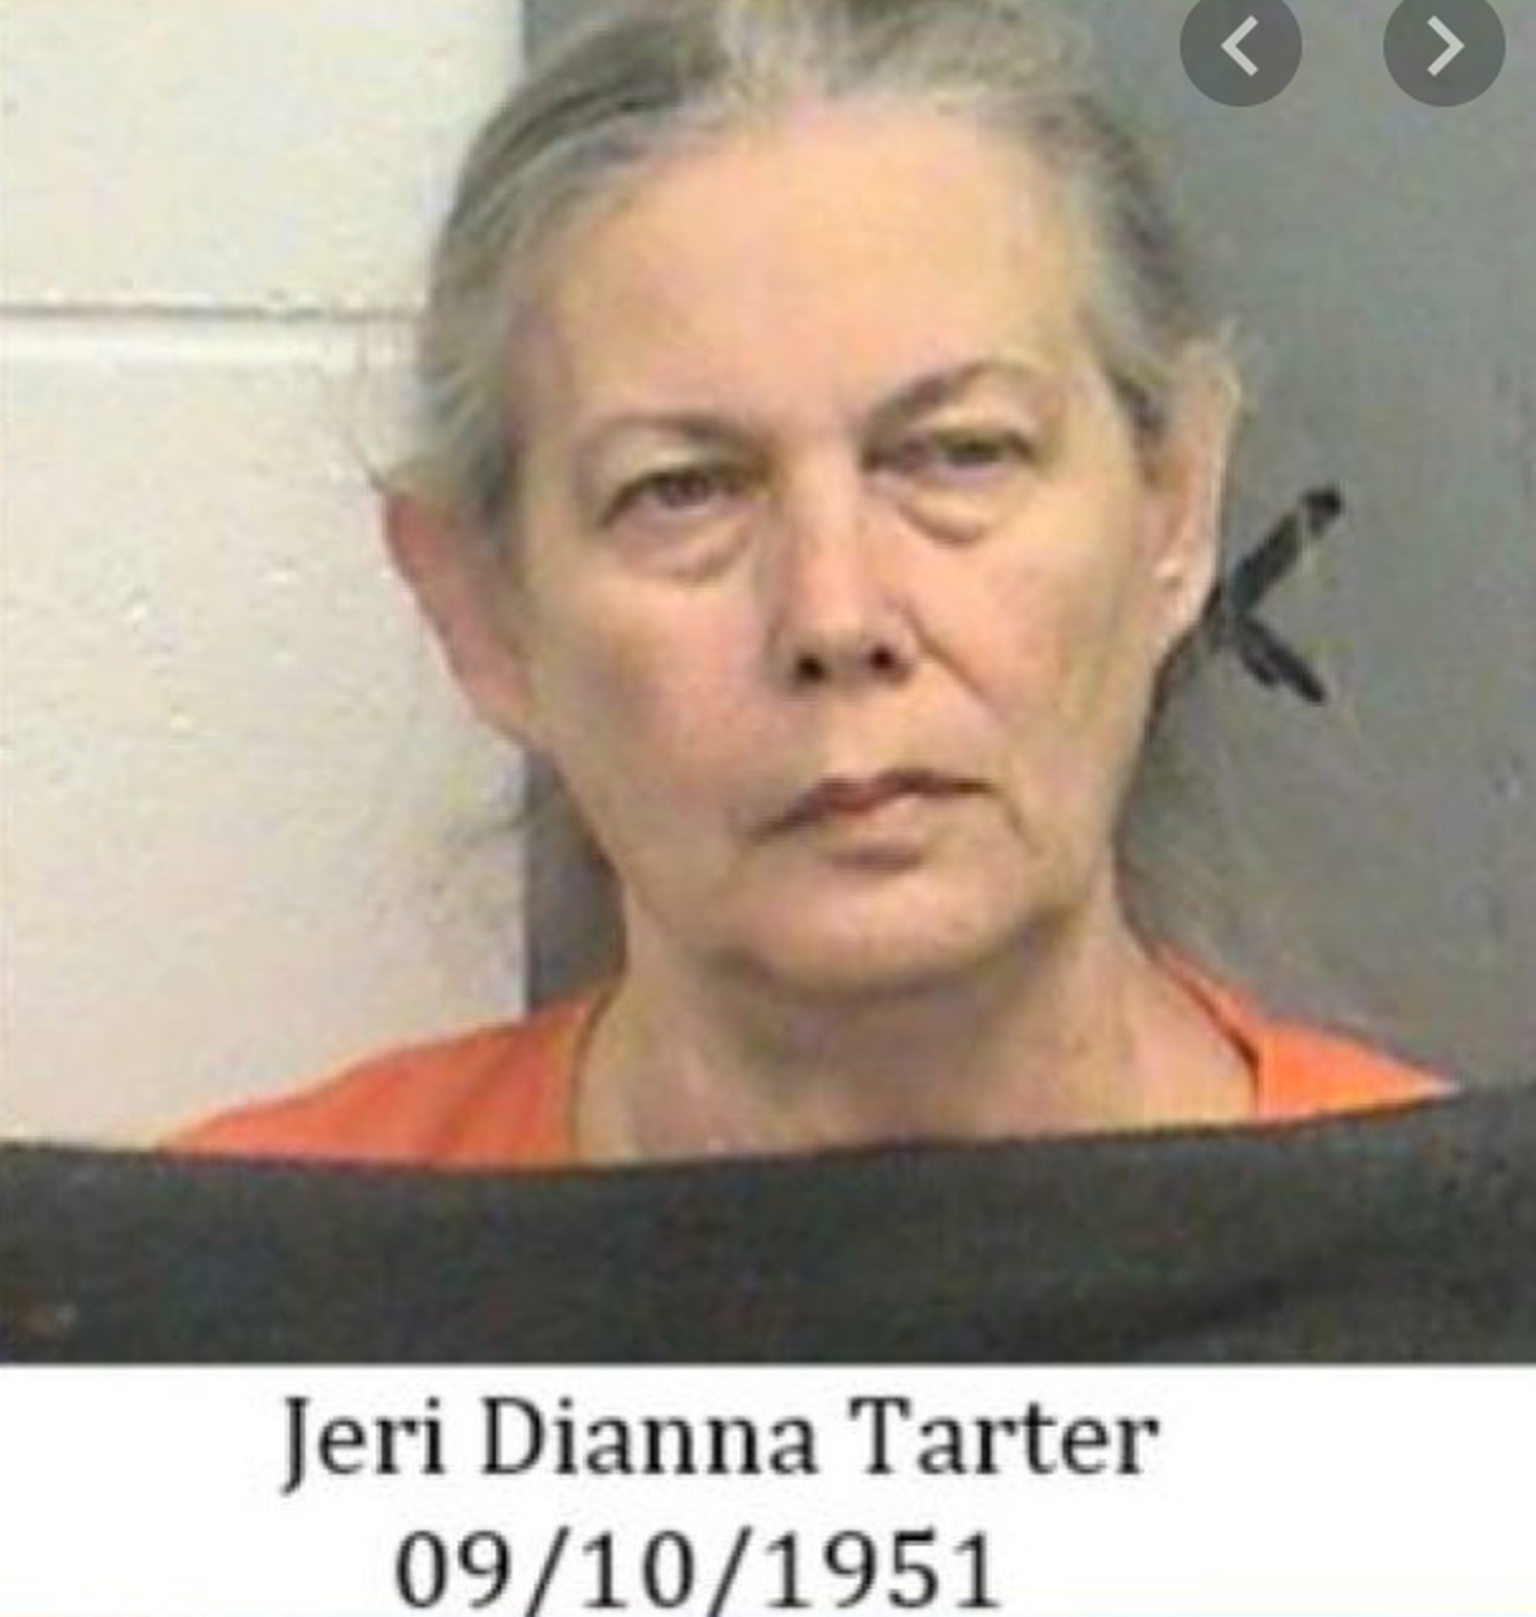 Jeri Dianna Tarter soovis lasta oma endise väimehe mõrvata.